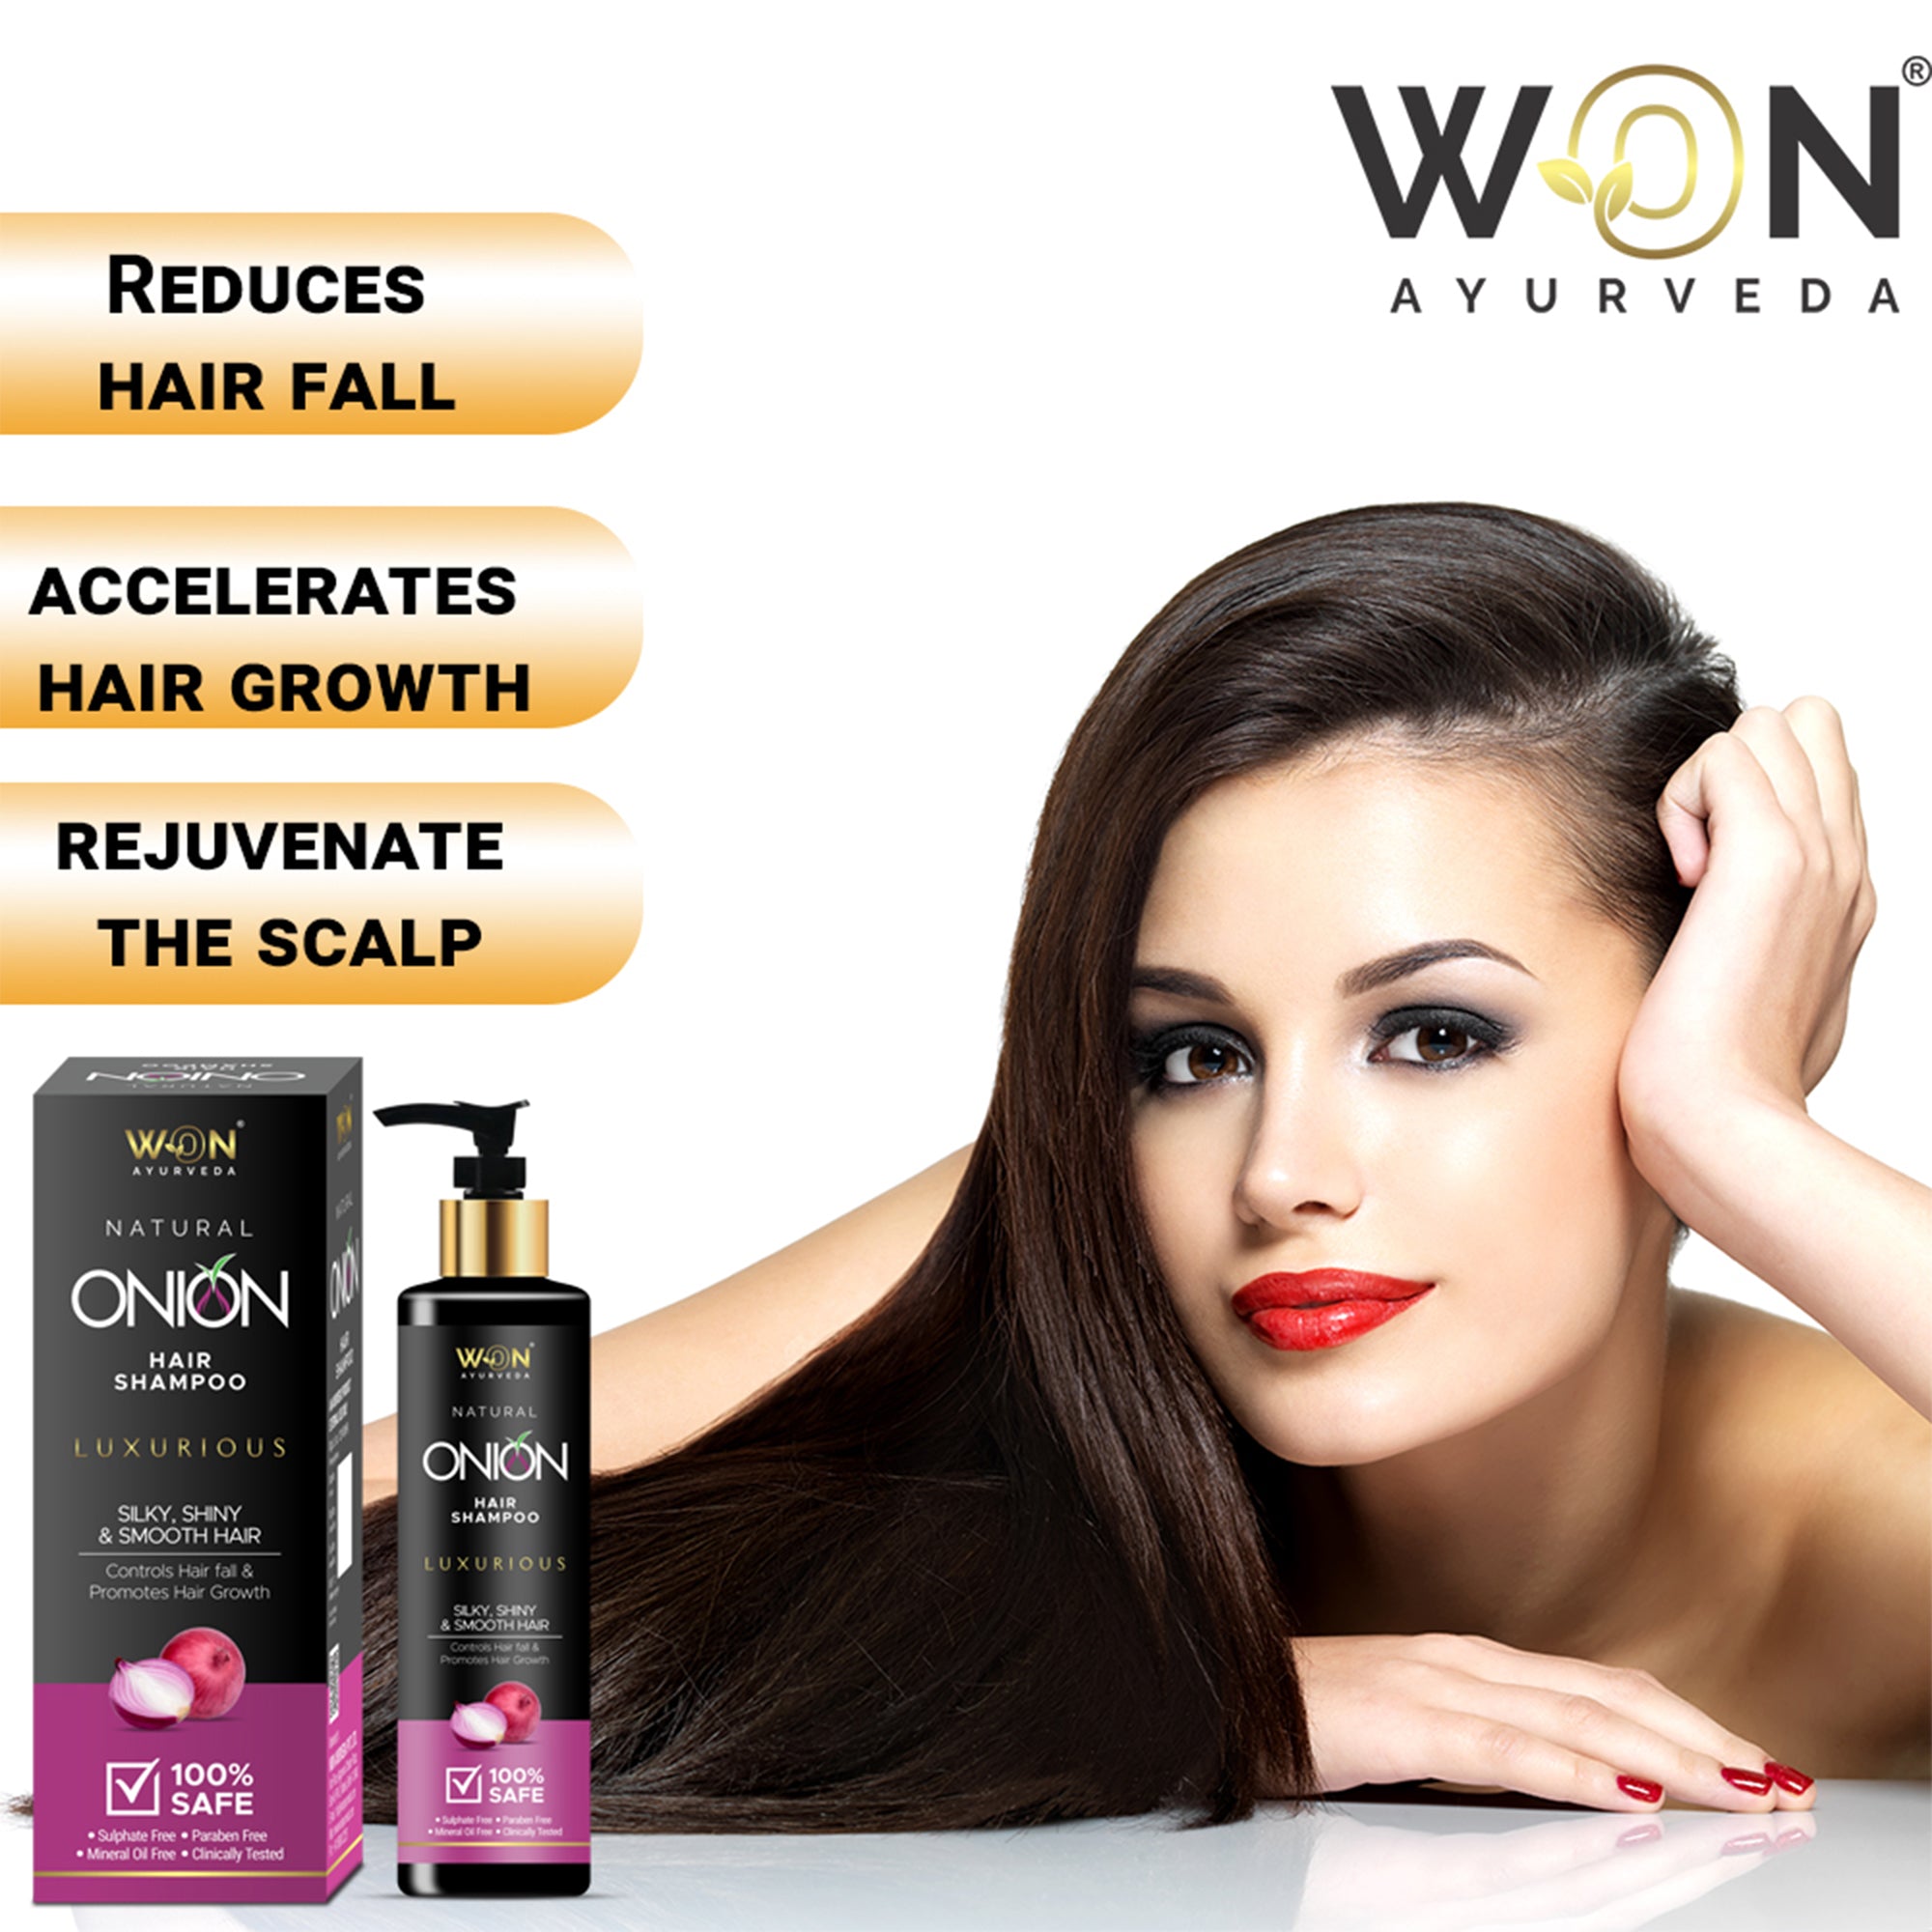 Won Ayurveda Natural Onion Hair Shampoo Hair Growth & Hair Fall Control